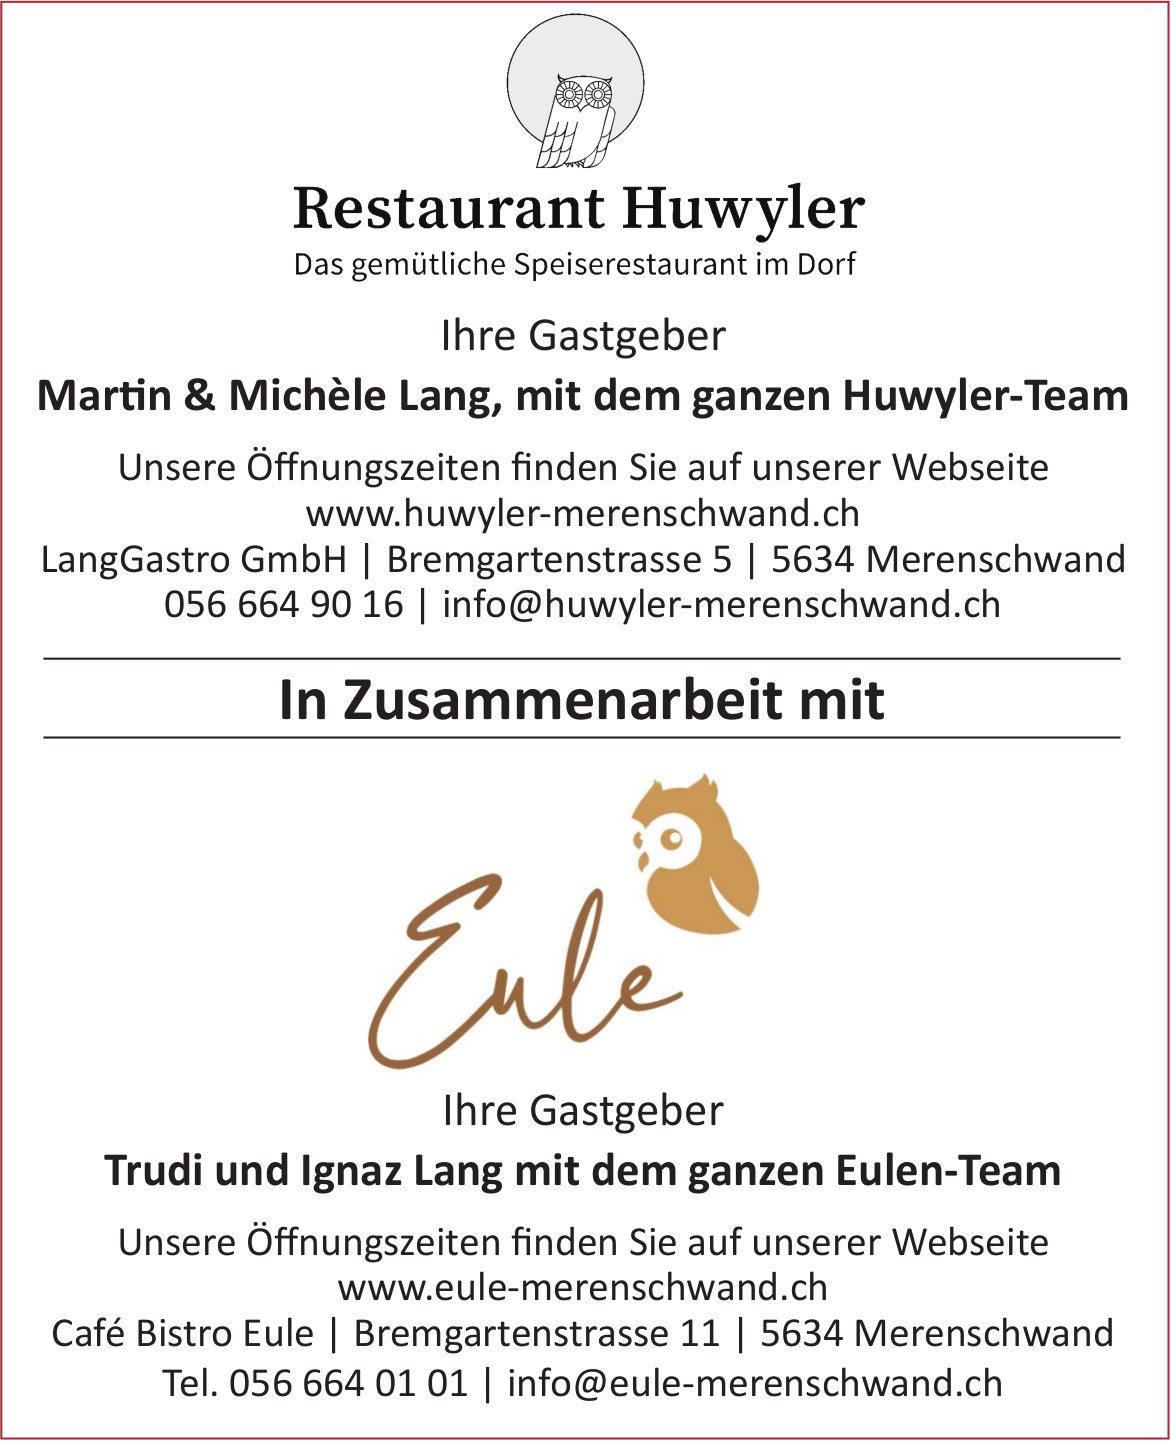 Café Bistro Eule, Merenschwand - In Zusammenarbeit mit Restaurant Huwyler